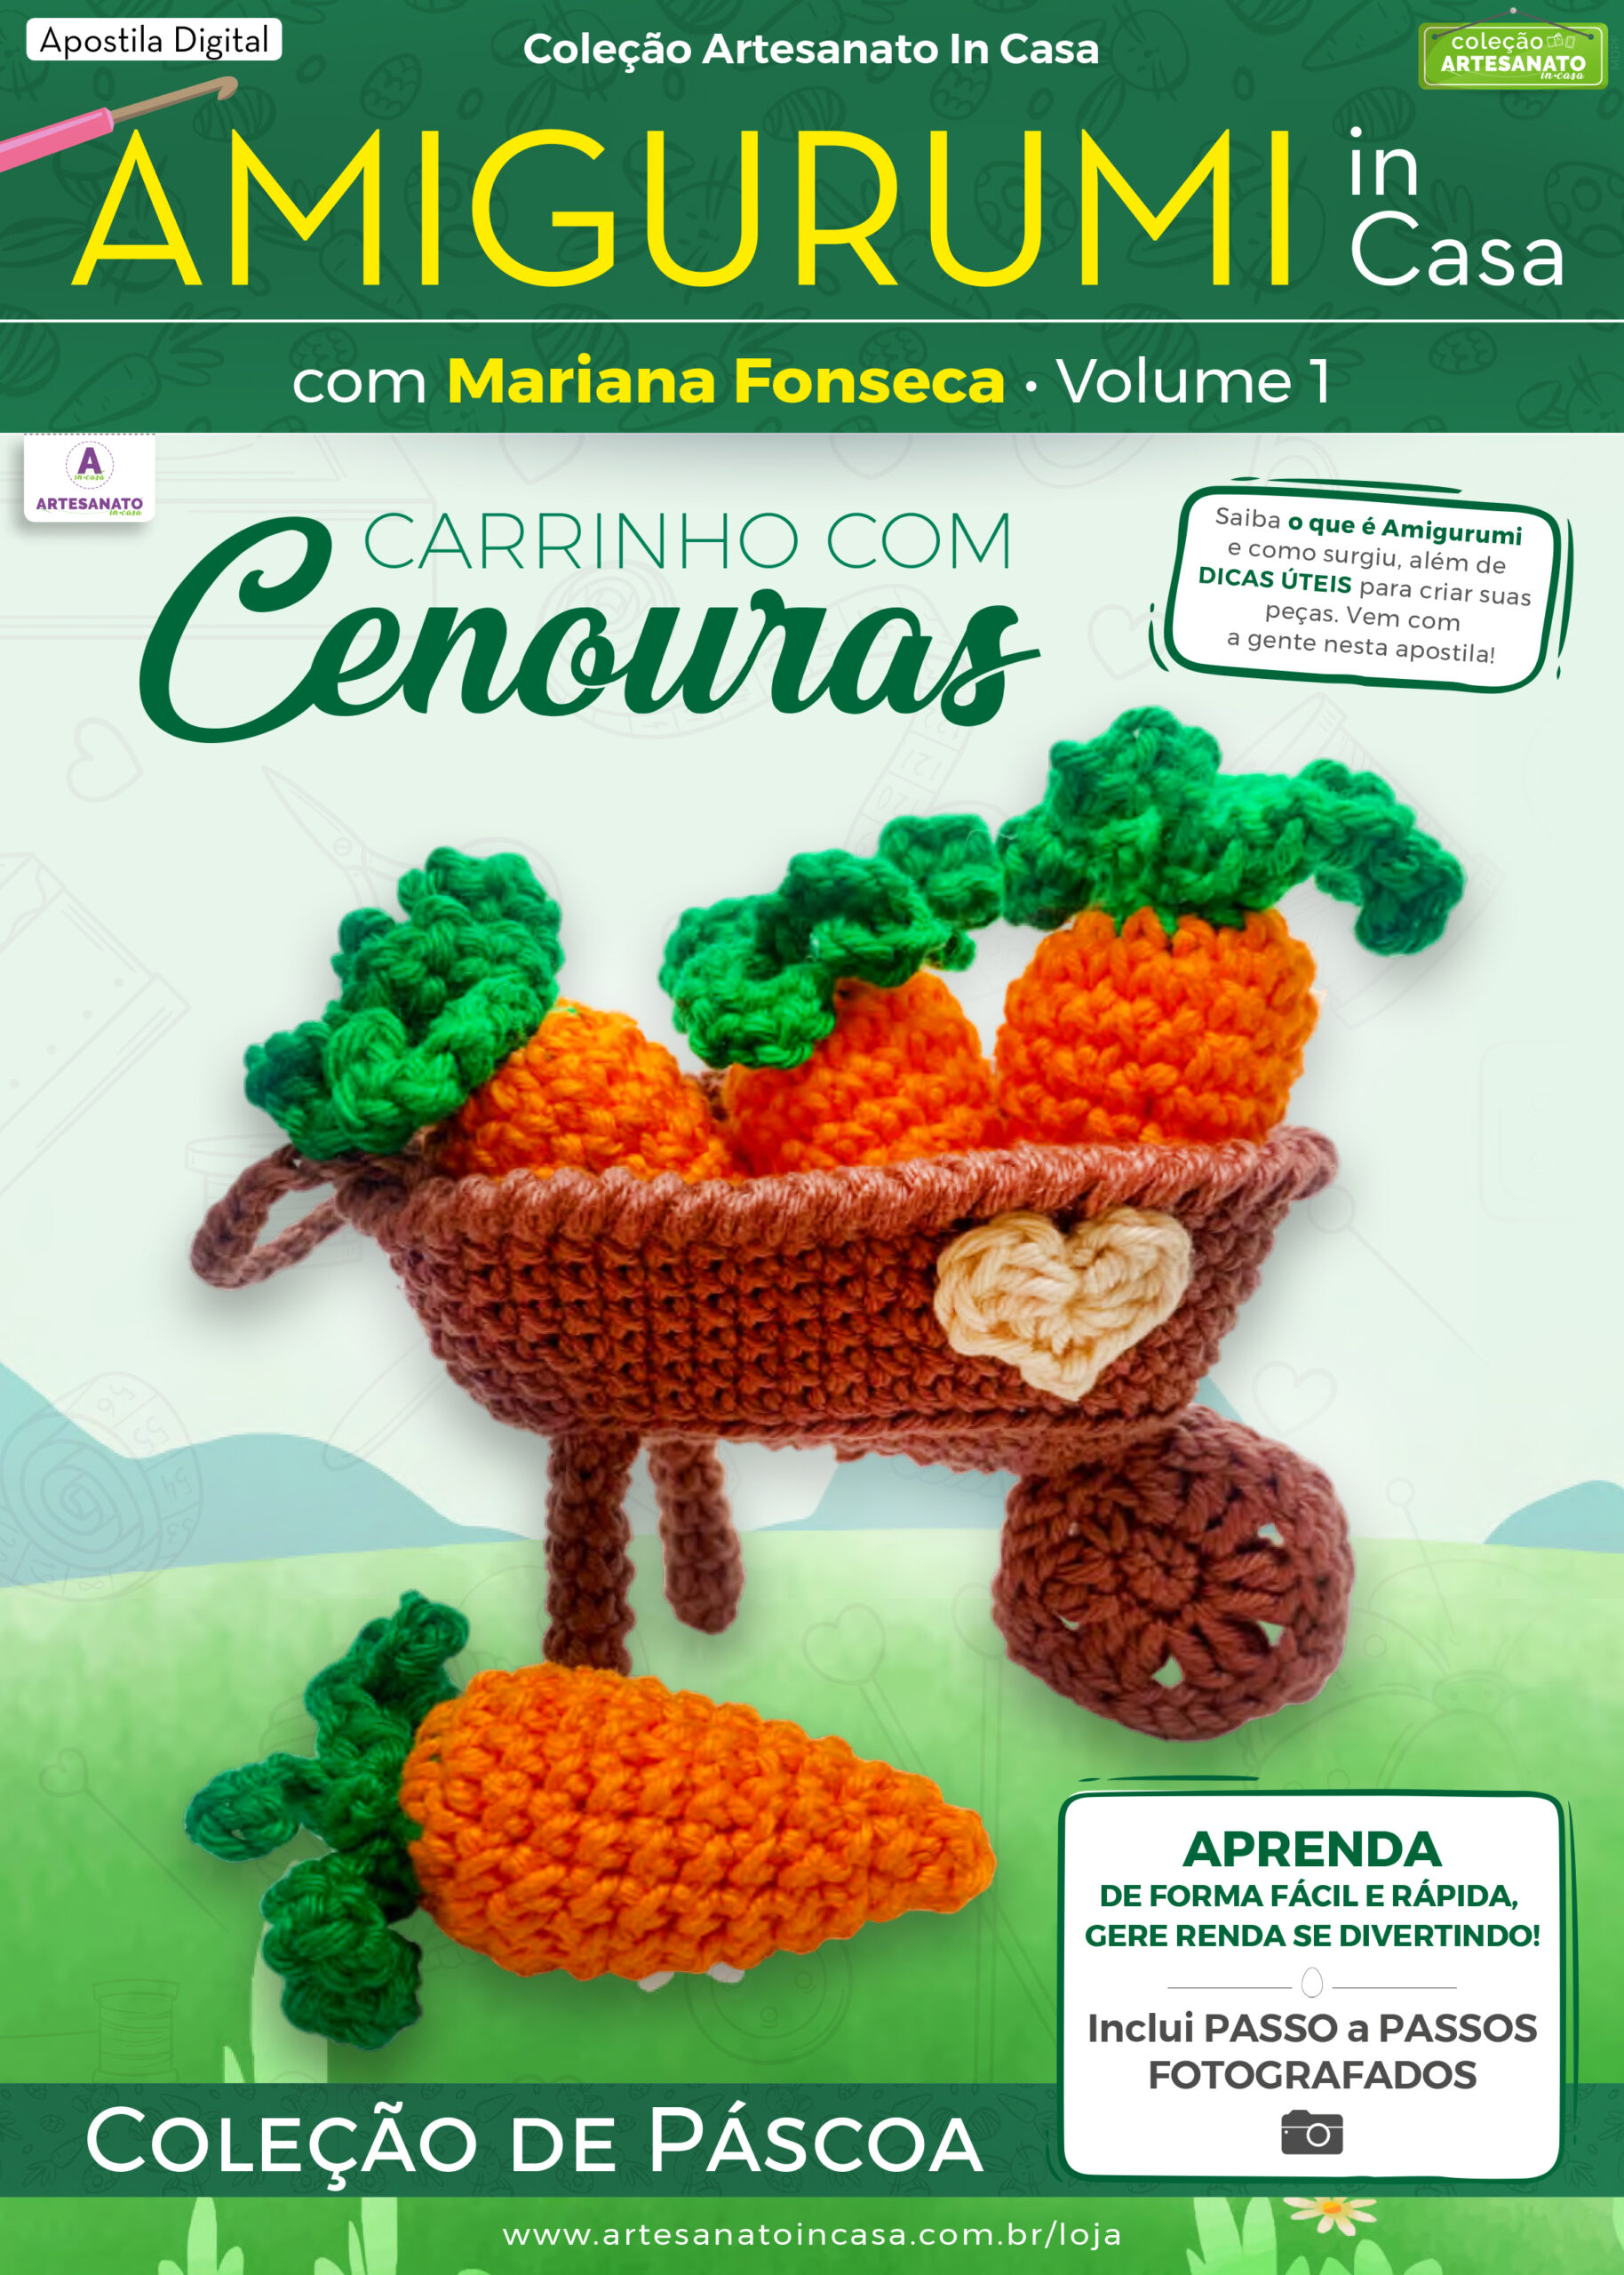 Apostila Digital – AMIGURUMI In Casa com Mariana Fonseca – Carrinho com Cenouras